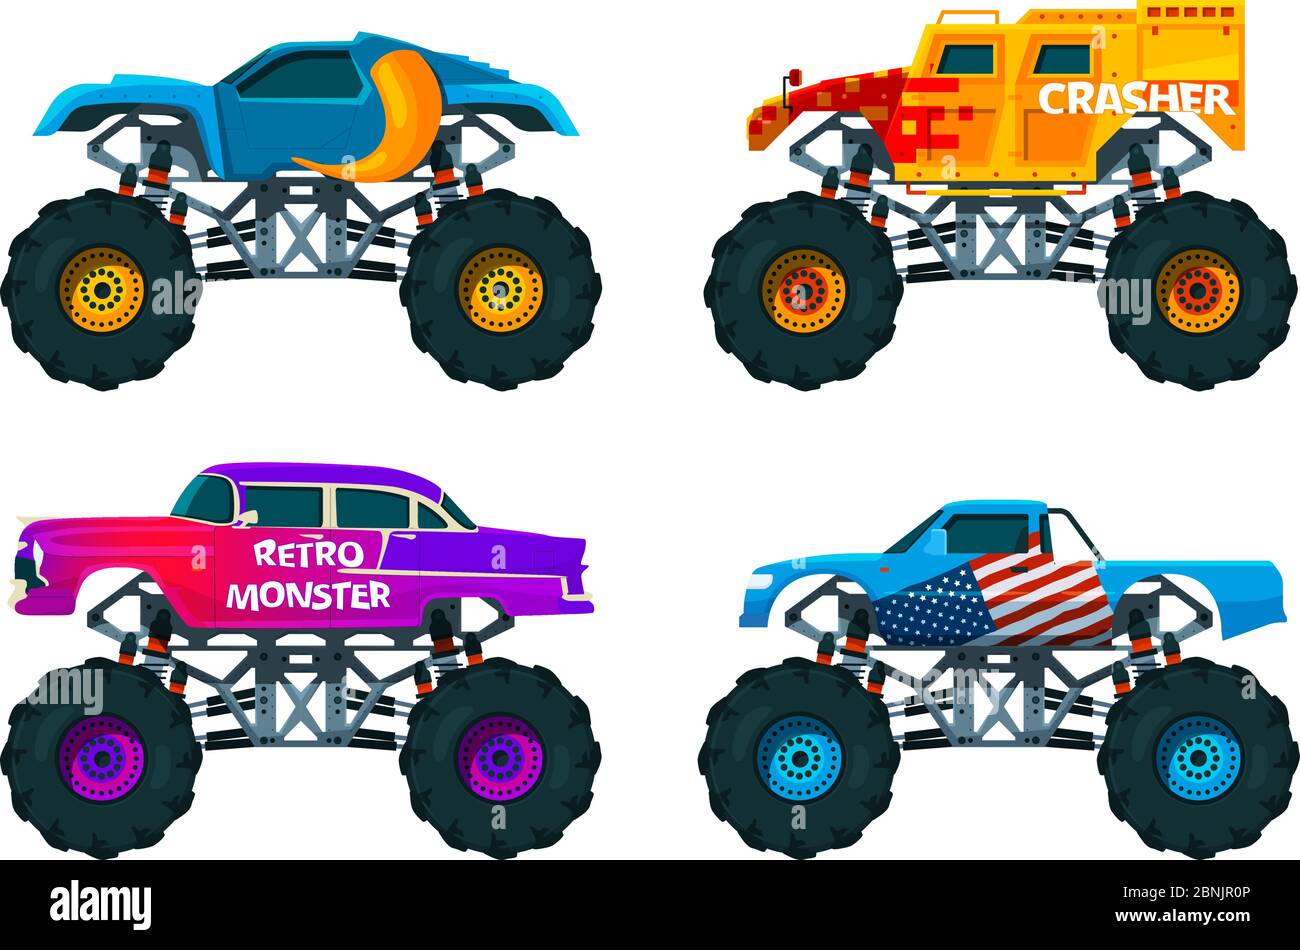 Cartoon Monster Truck  Monster trucks, Monster truck art, Big monster  trucks